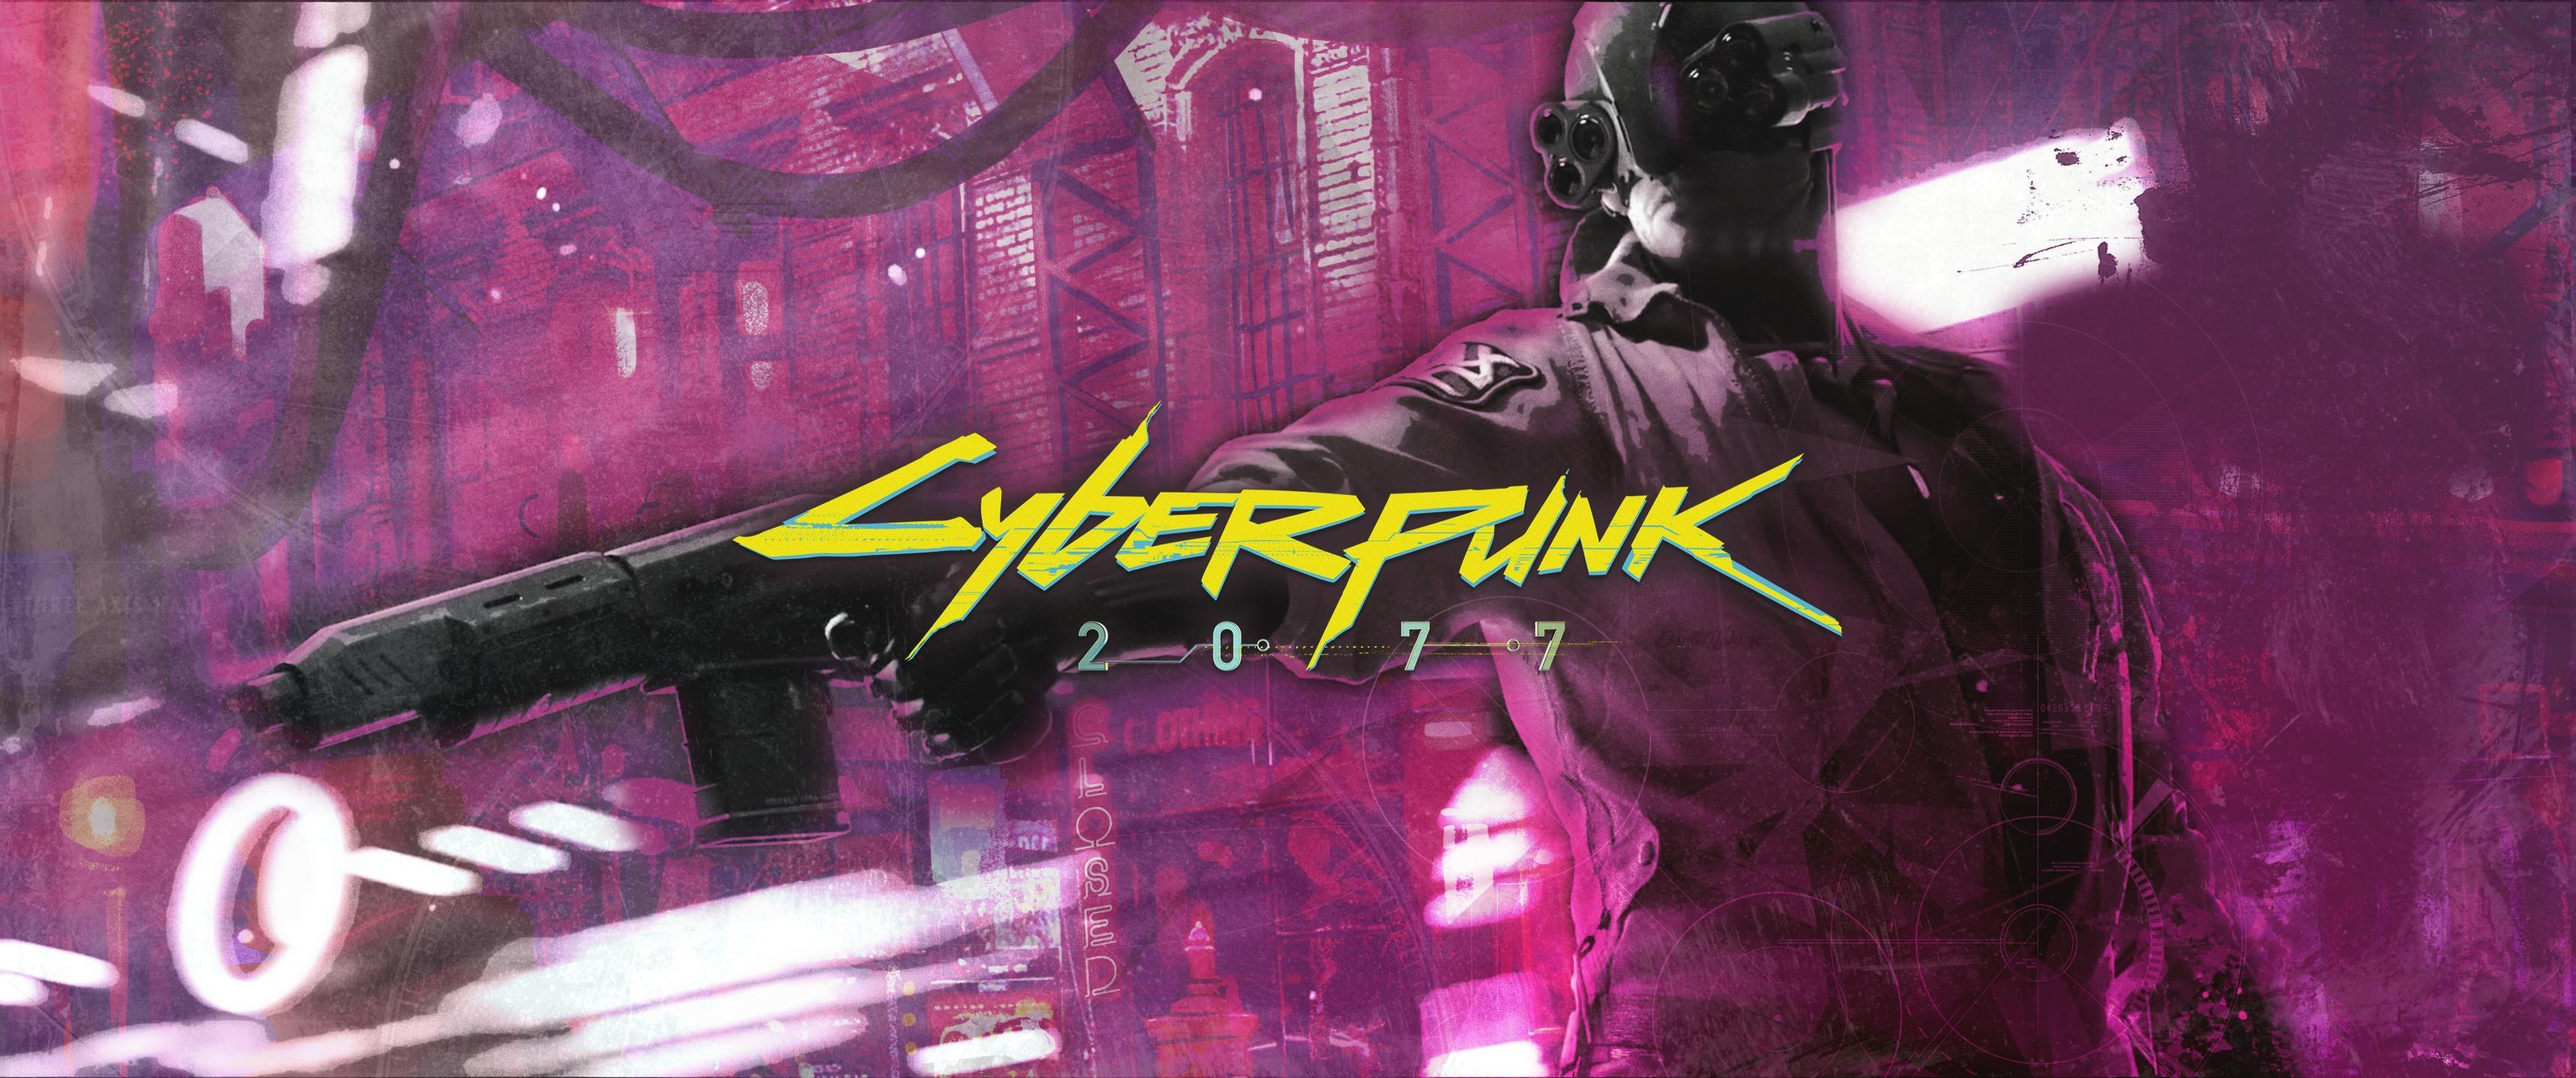 Cyberpunk 2077 Minimalist 4K Wallpaper #3.1545